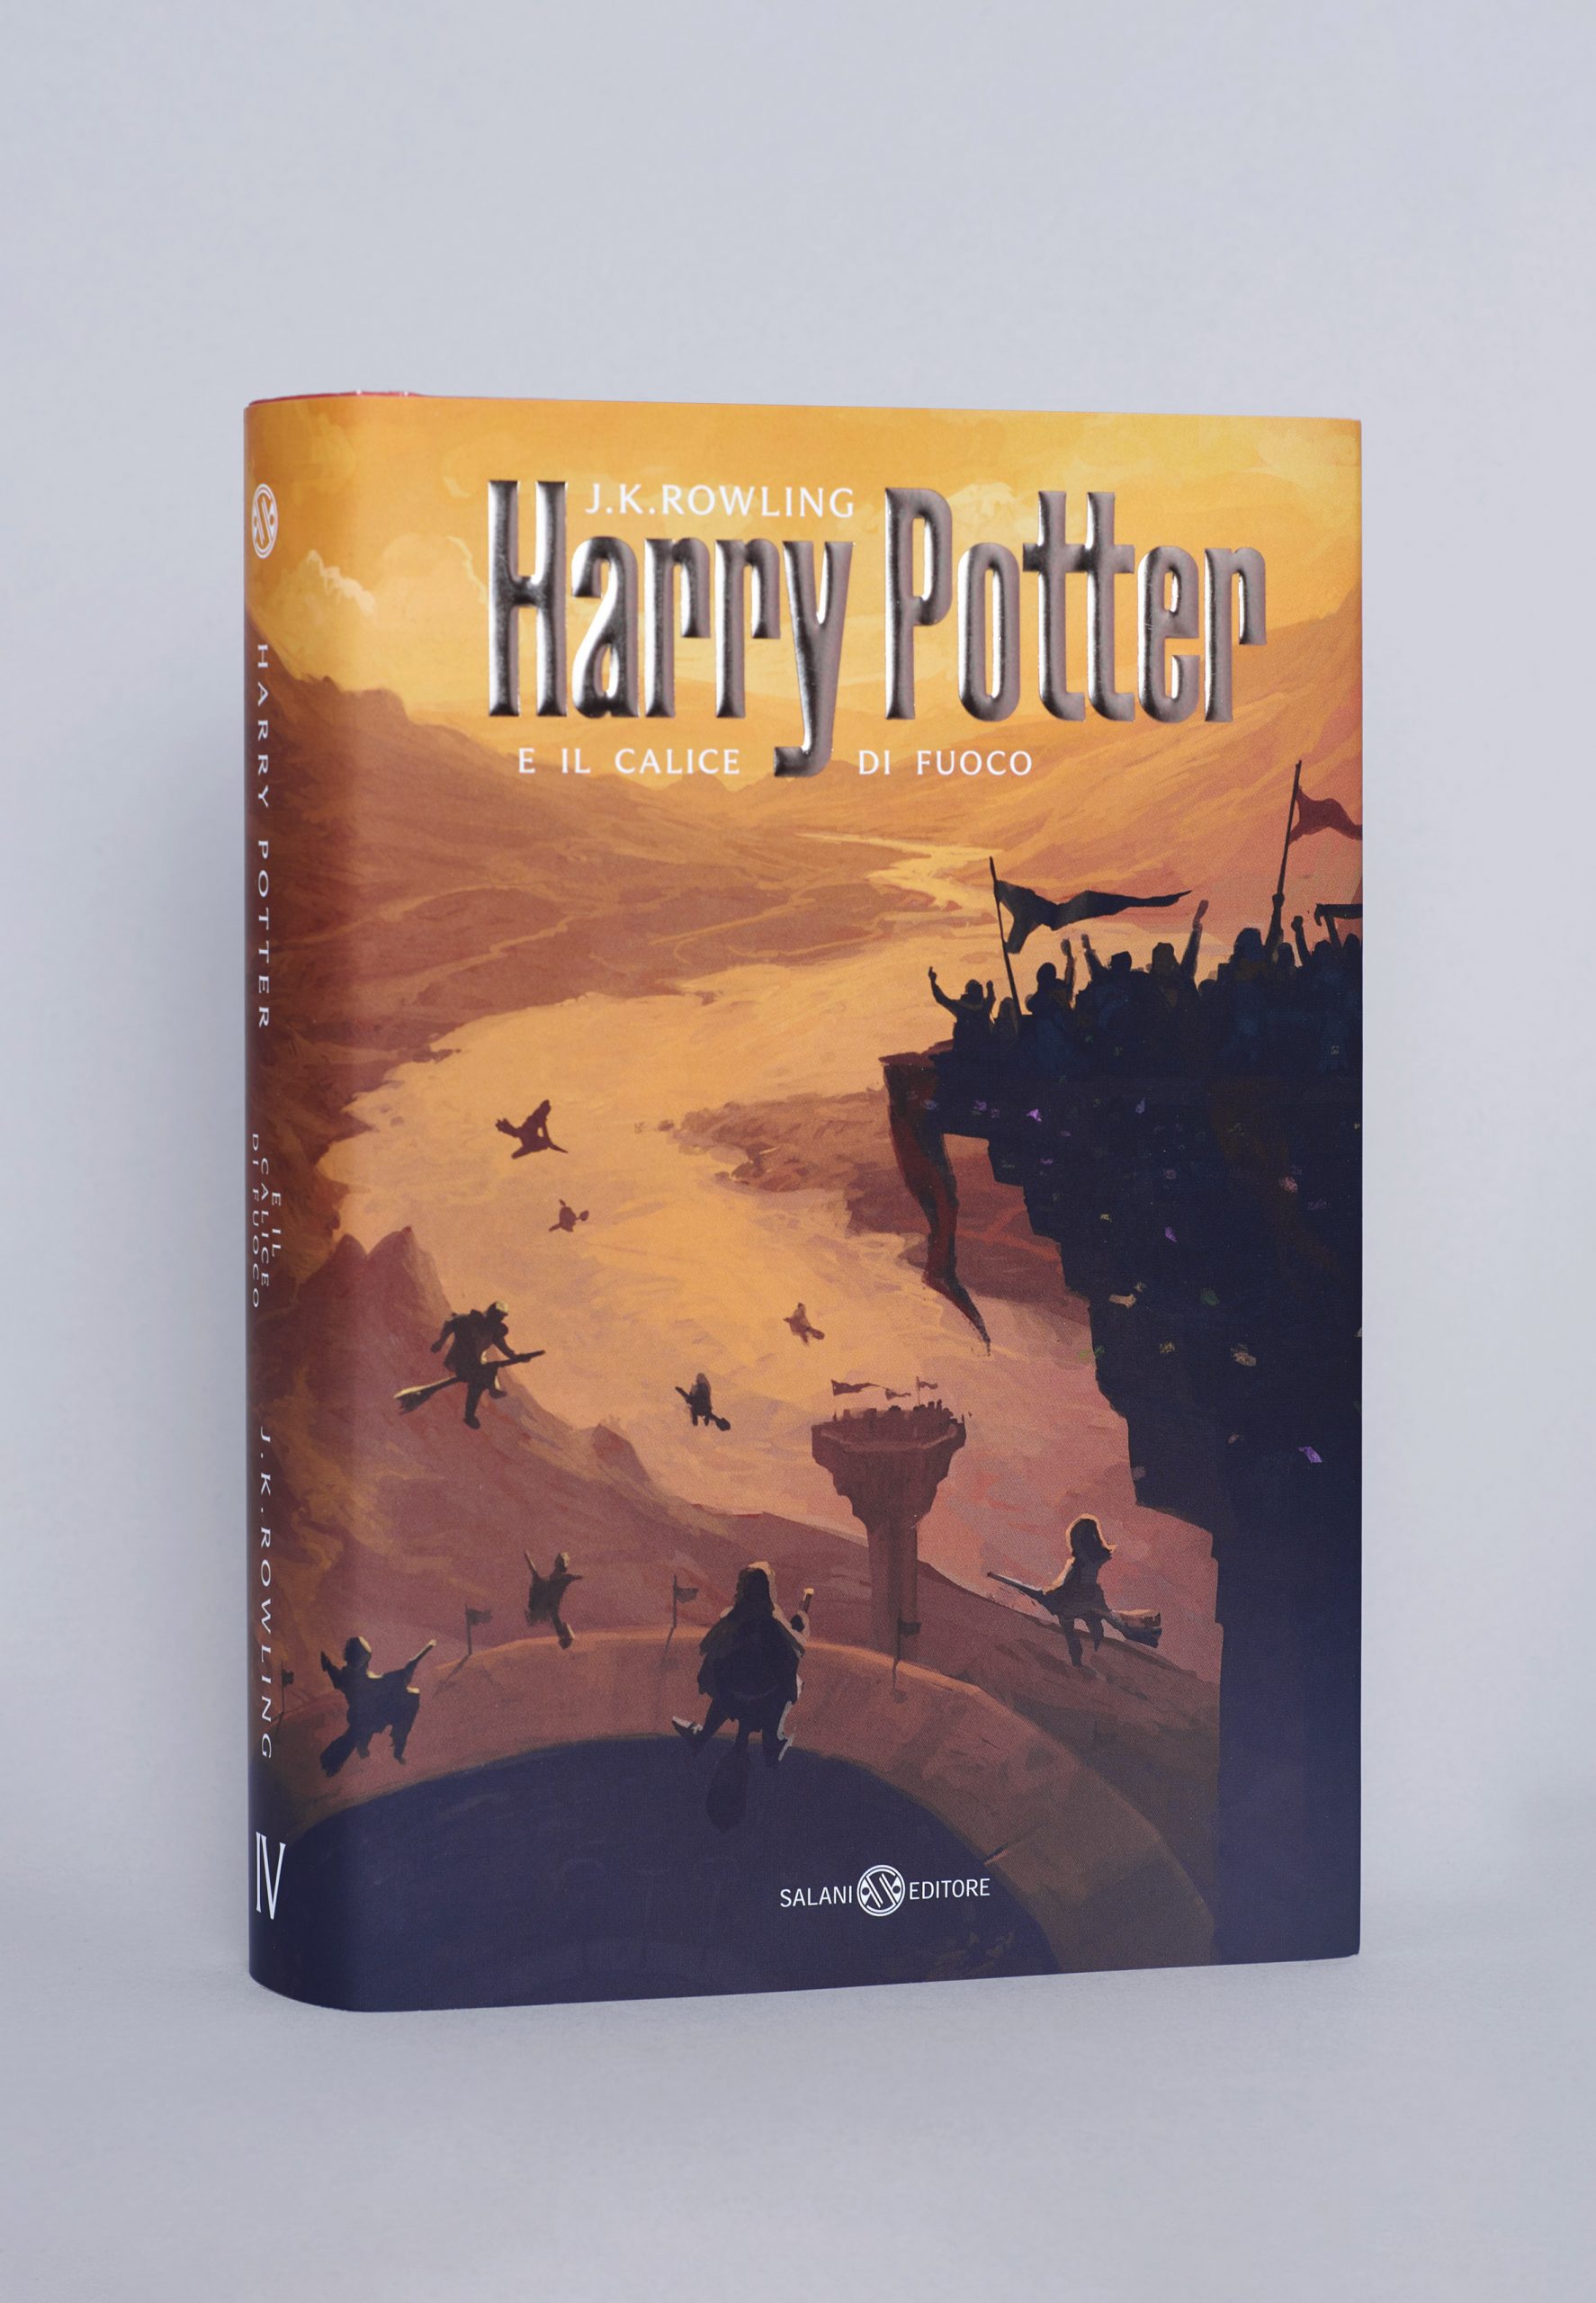 Okładki Harry’ego Pottera inspirowane architekturą